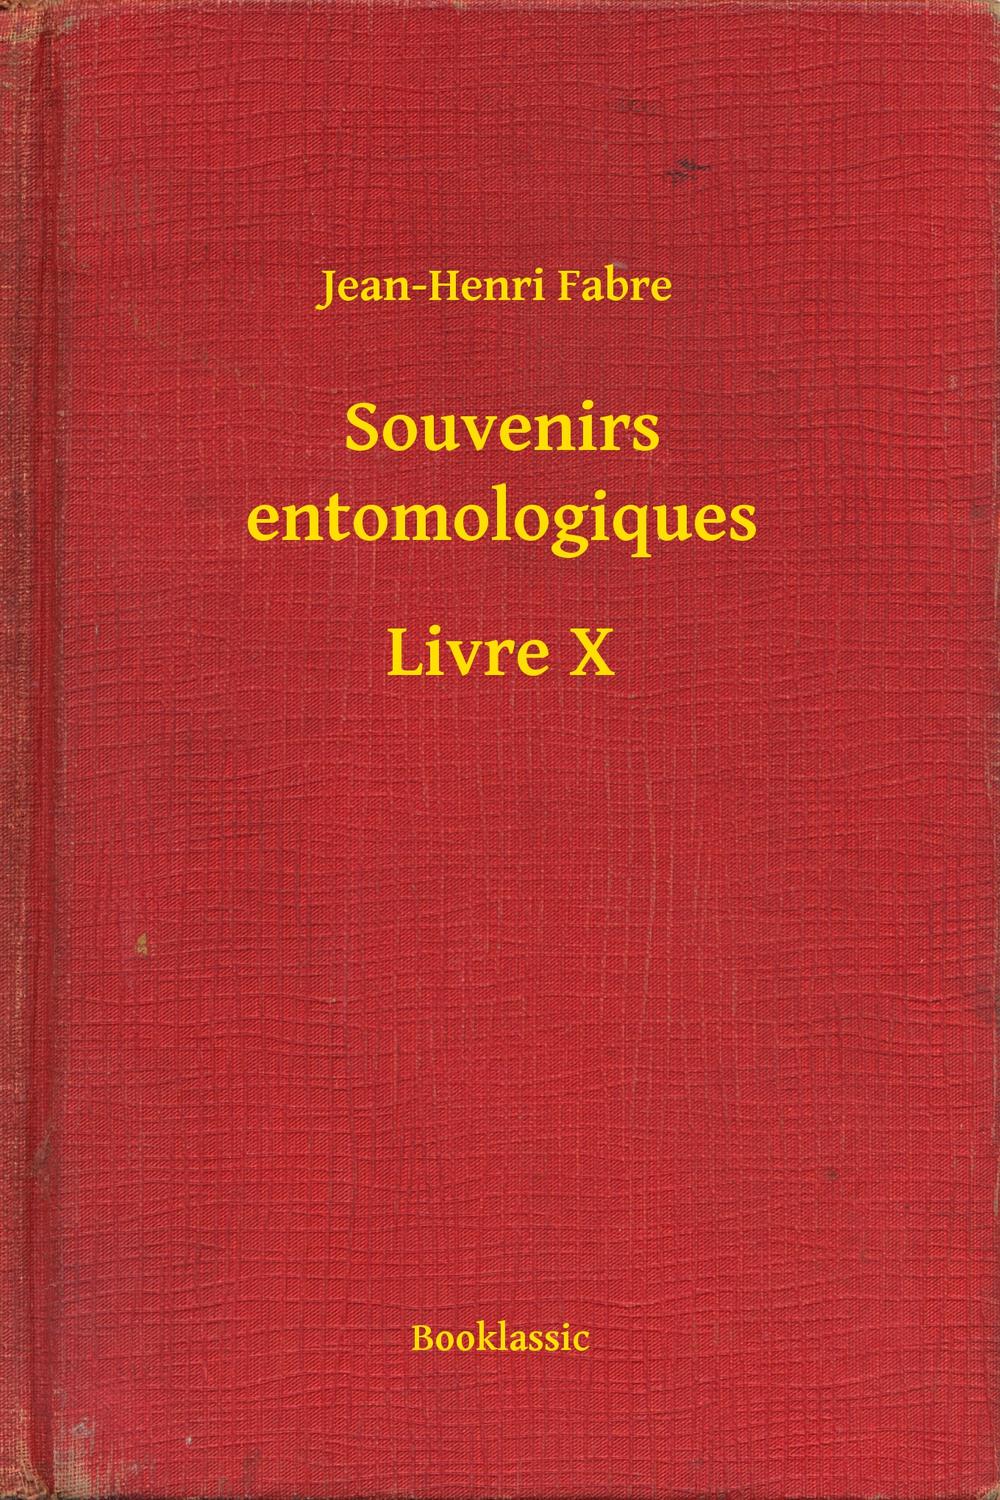 Souvenirs entomologiques - Livre X - Jean-Henri Fabre